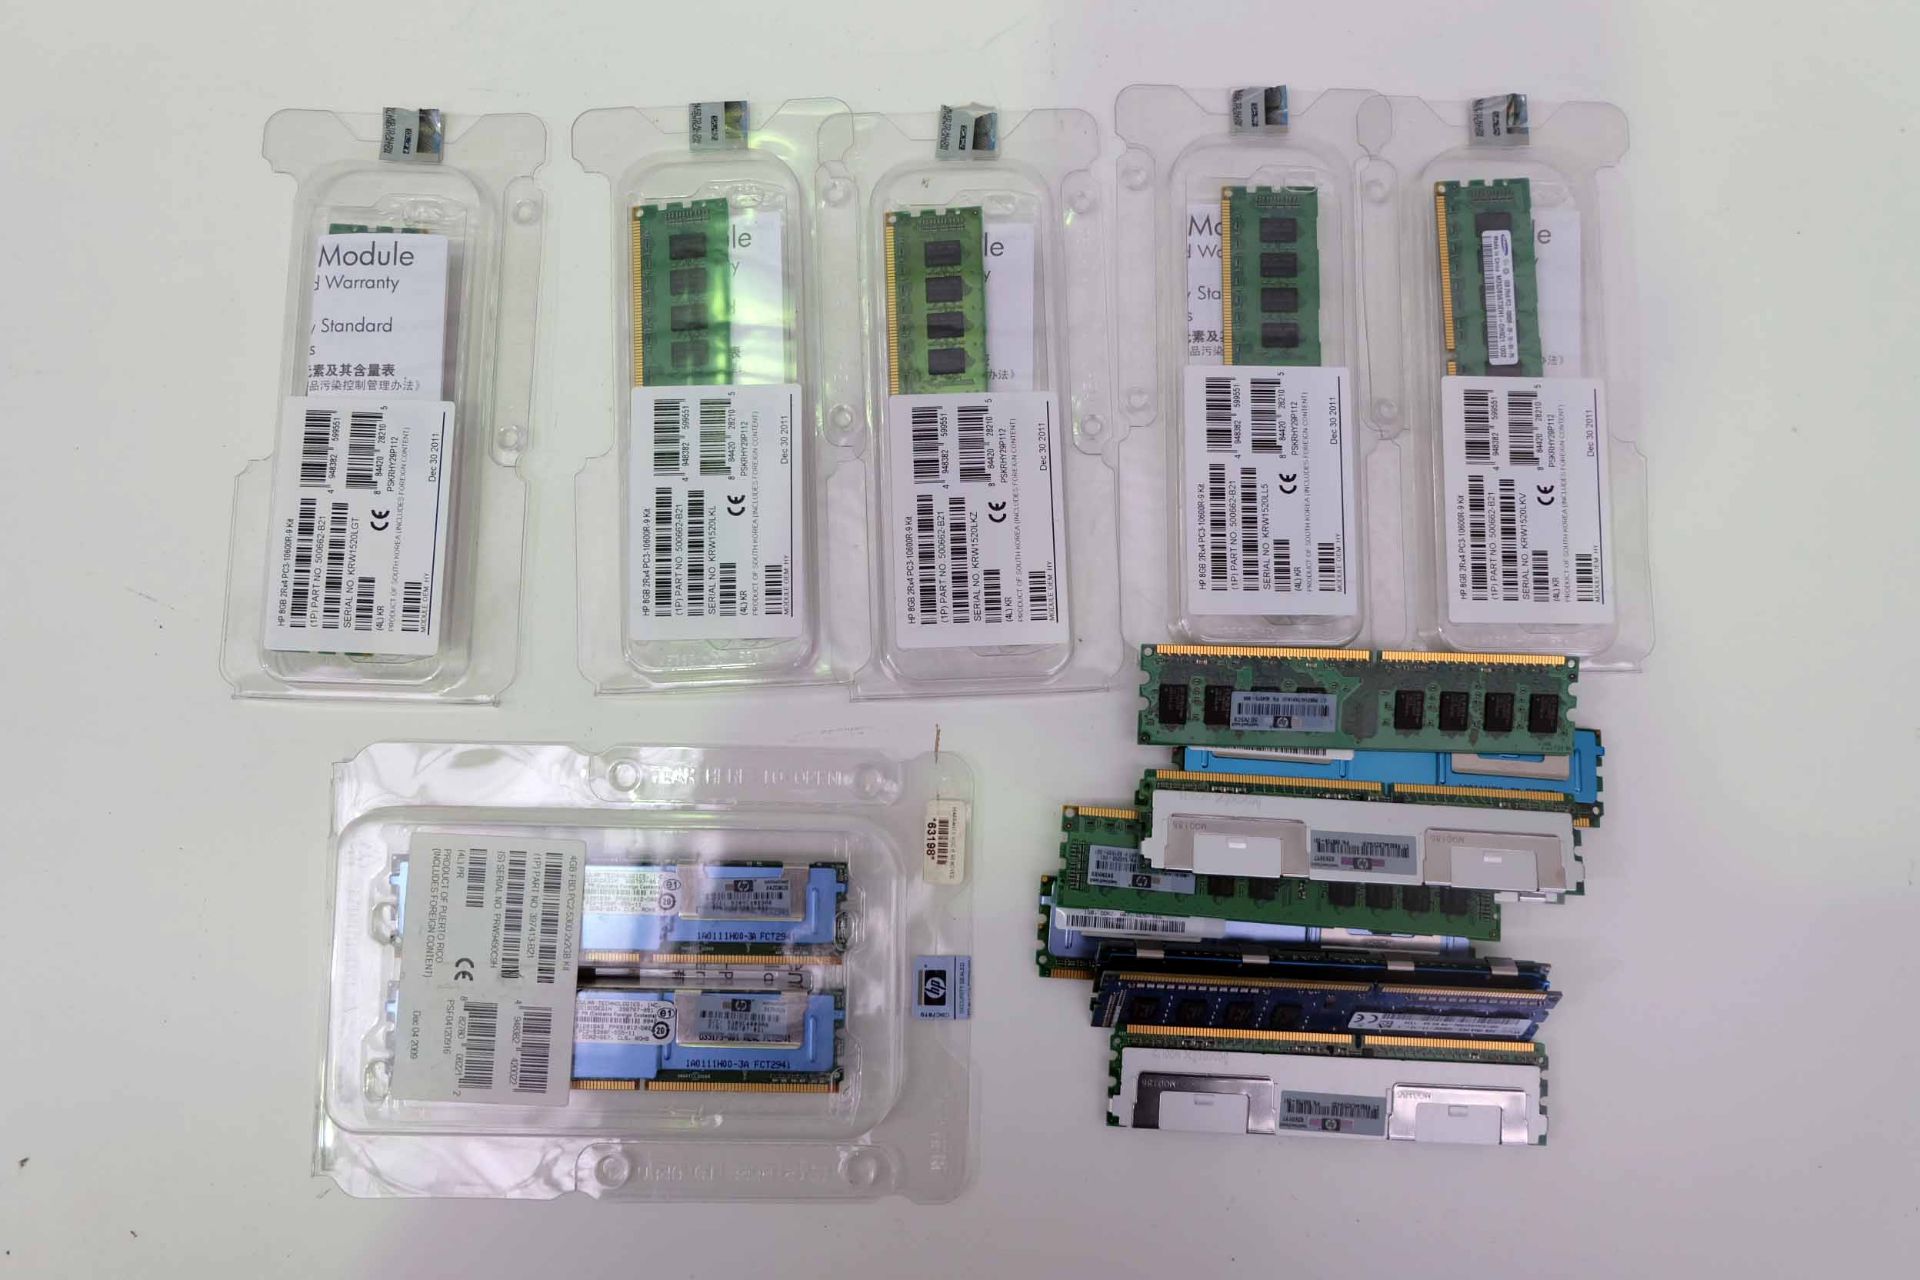 Quantity of HP Server Memory Cards.